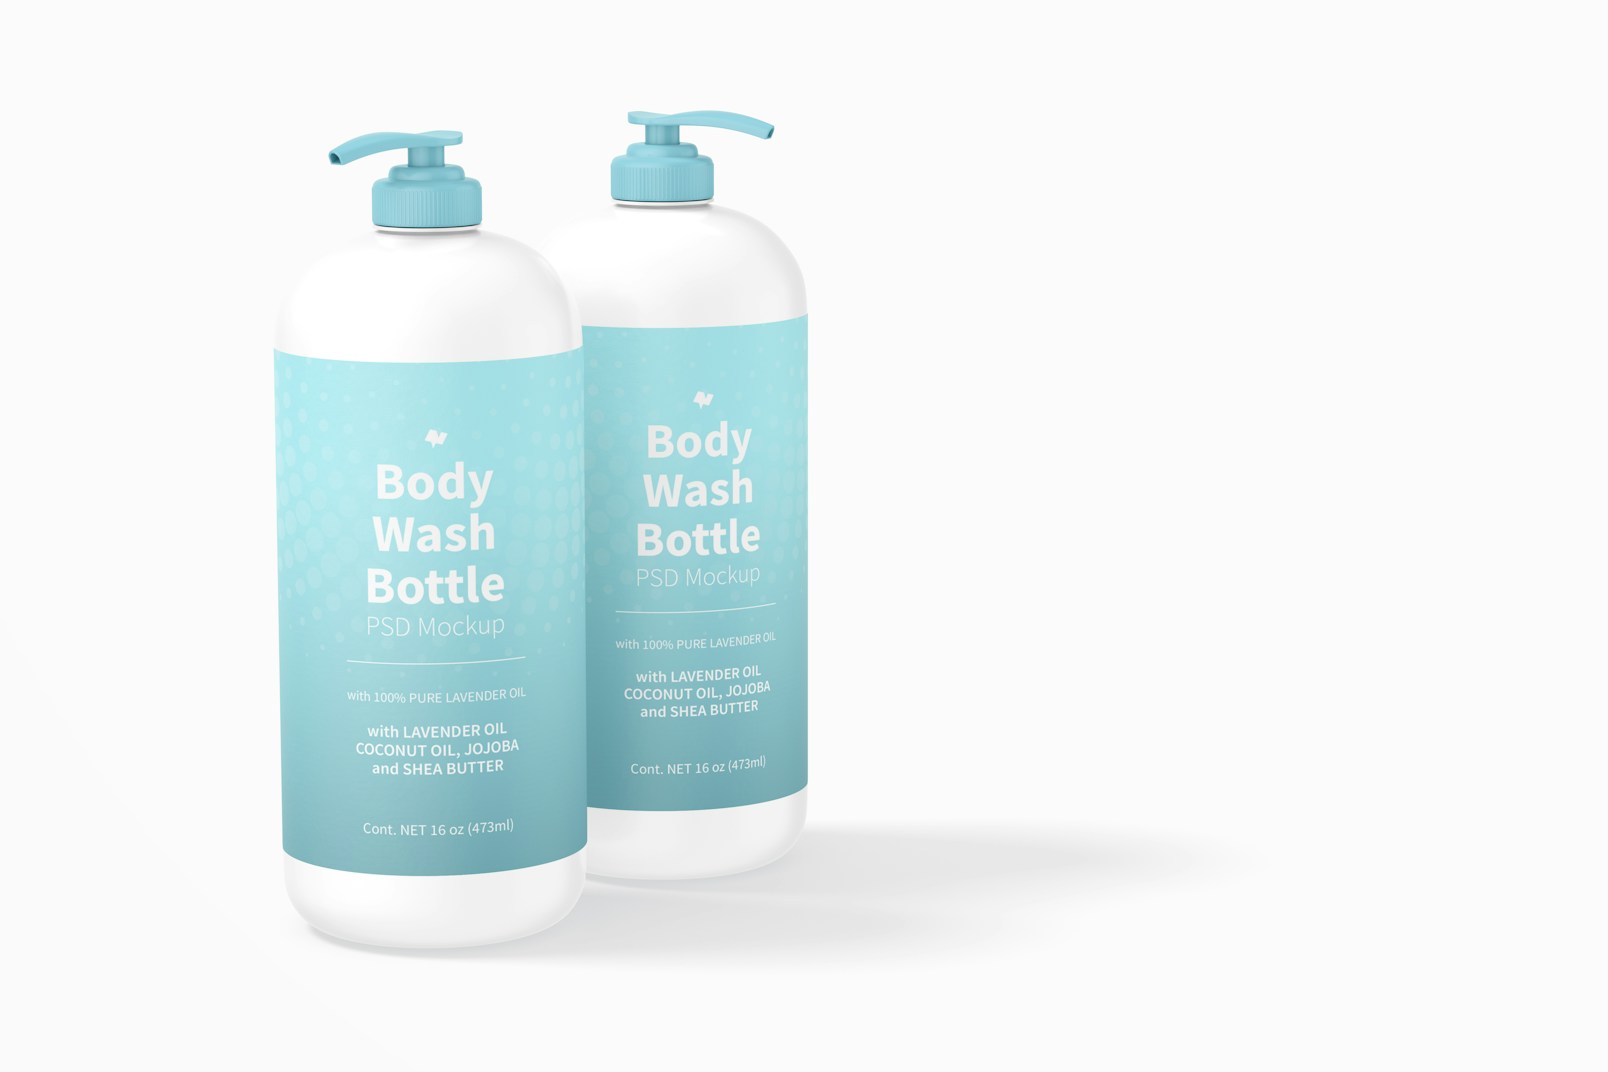 16 oz Body Wash Bottles Mockup, Perspective